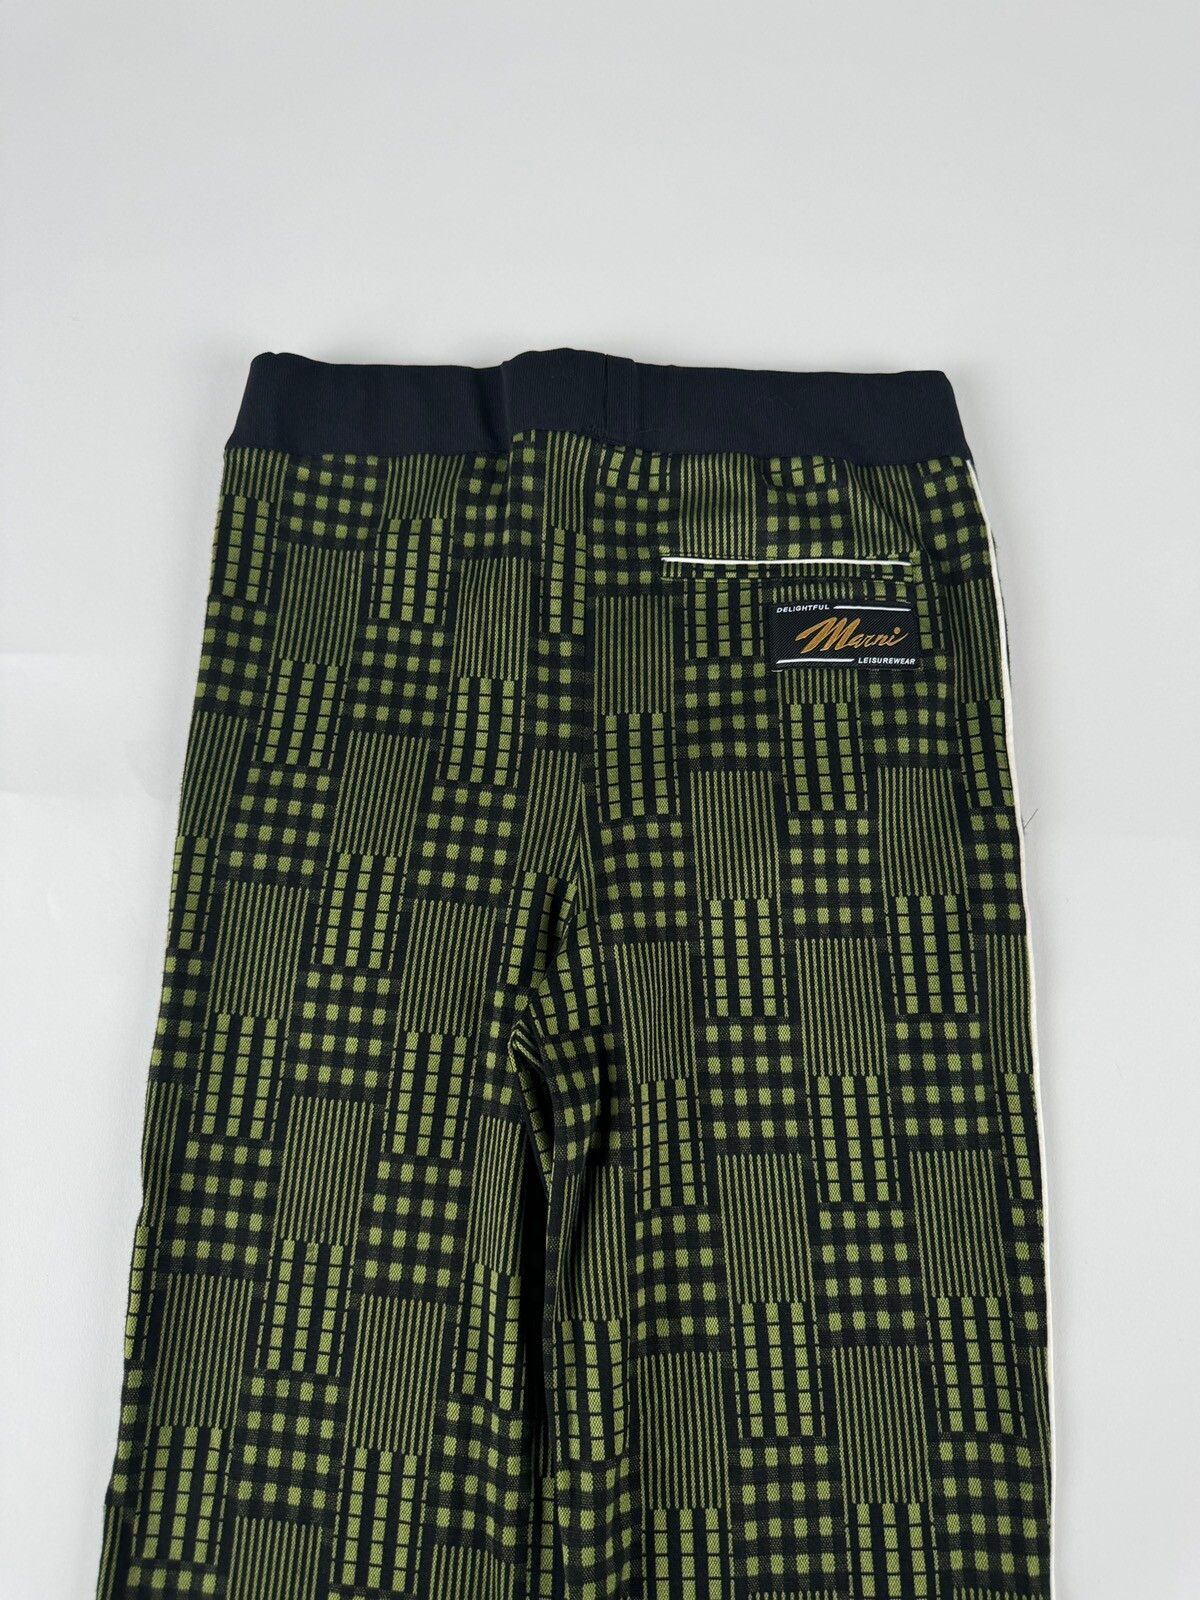 Marni Marni Striped Jersey Trousers Size US 30 / EU 46 - 6 Thumbnail